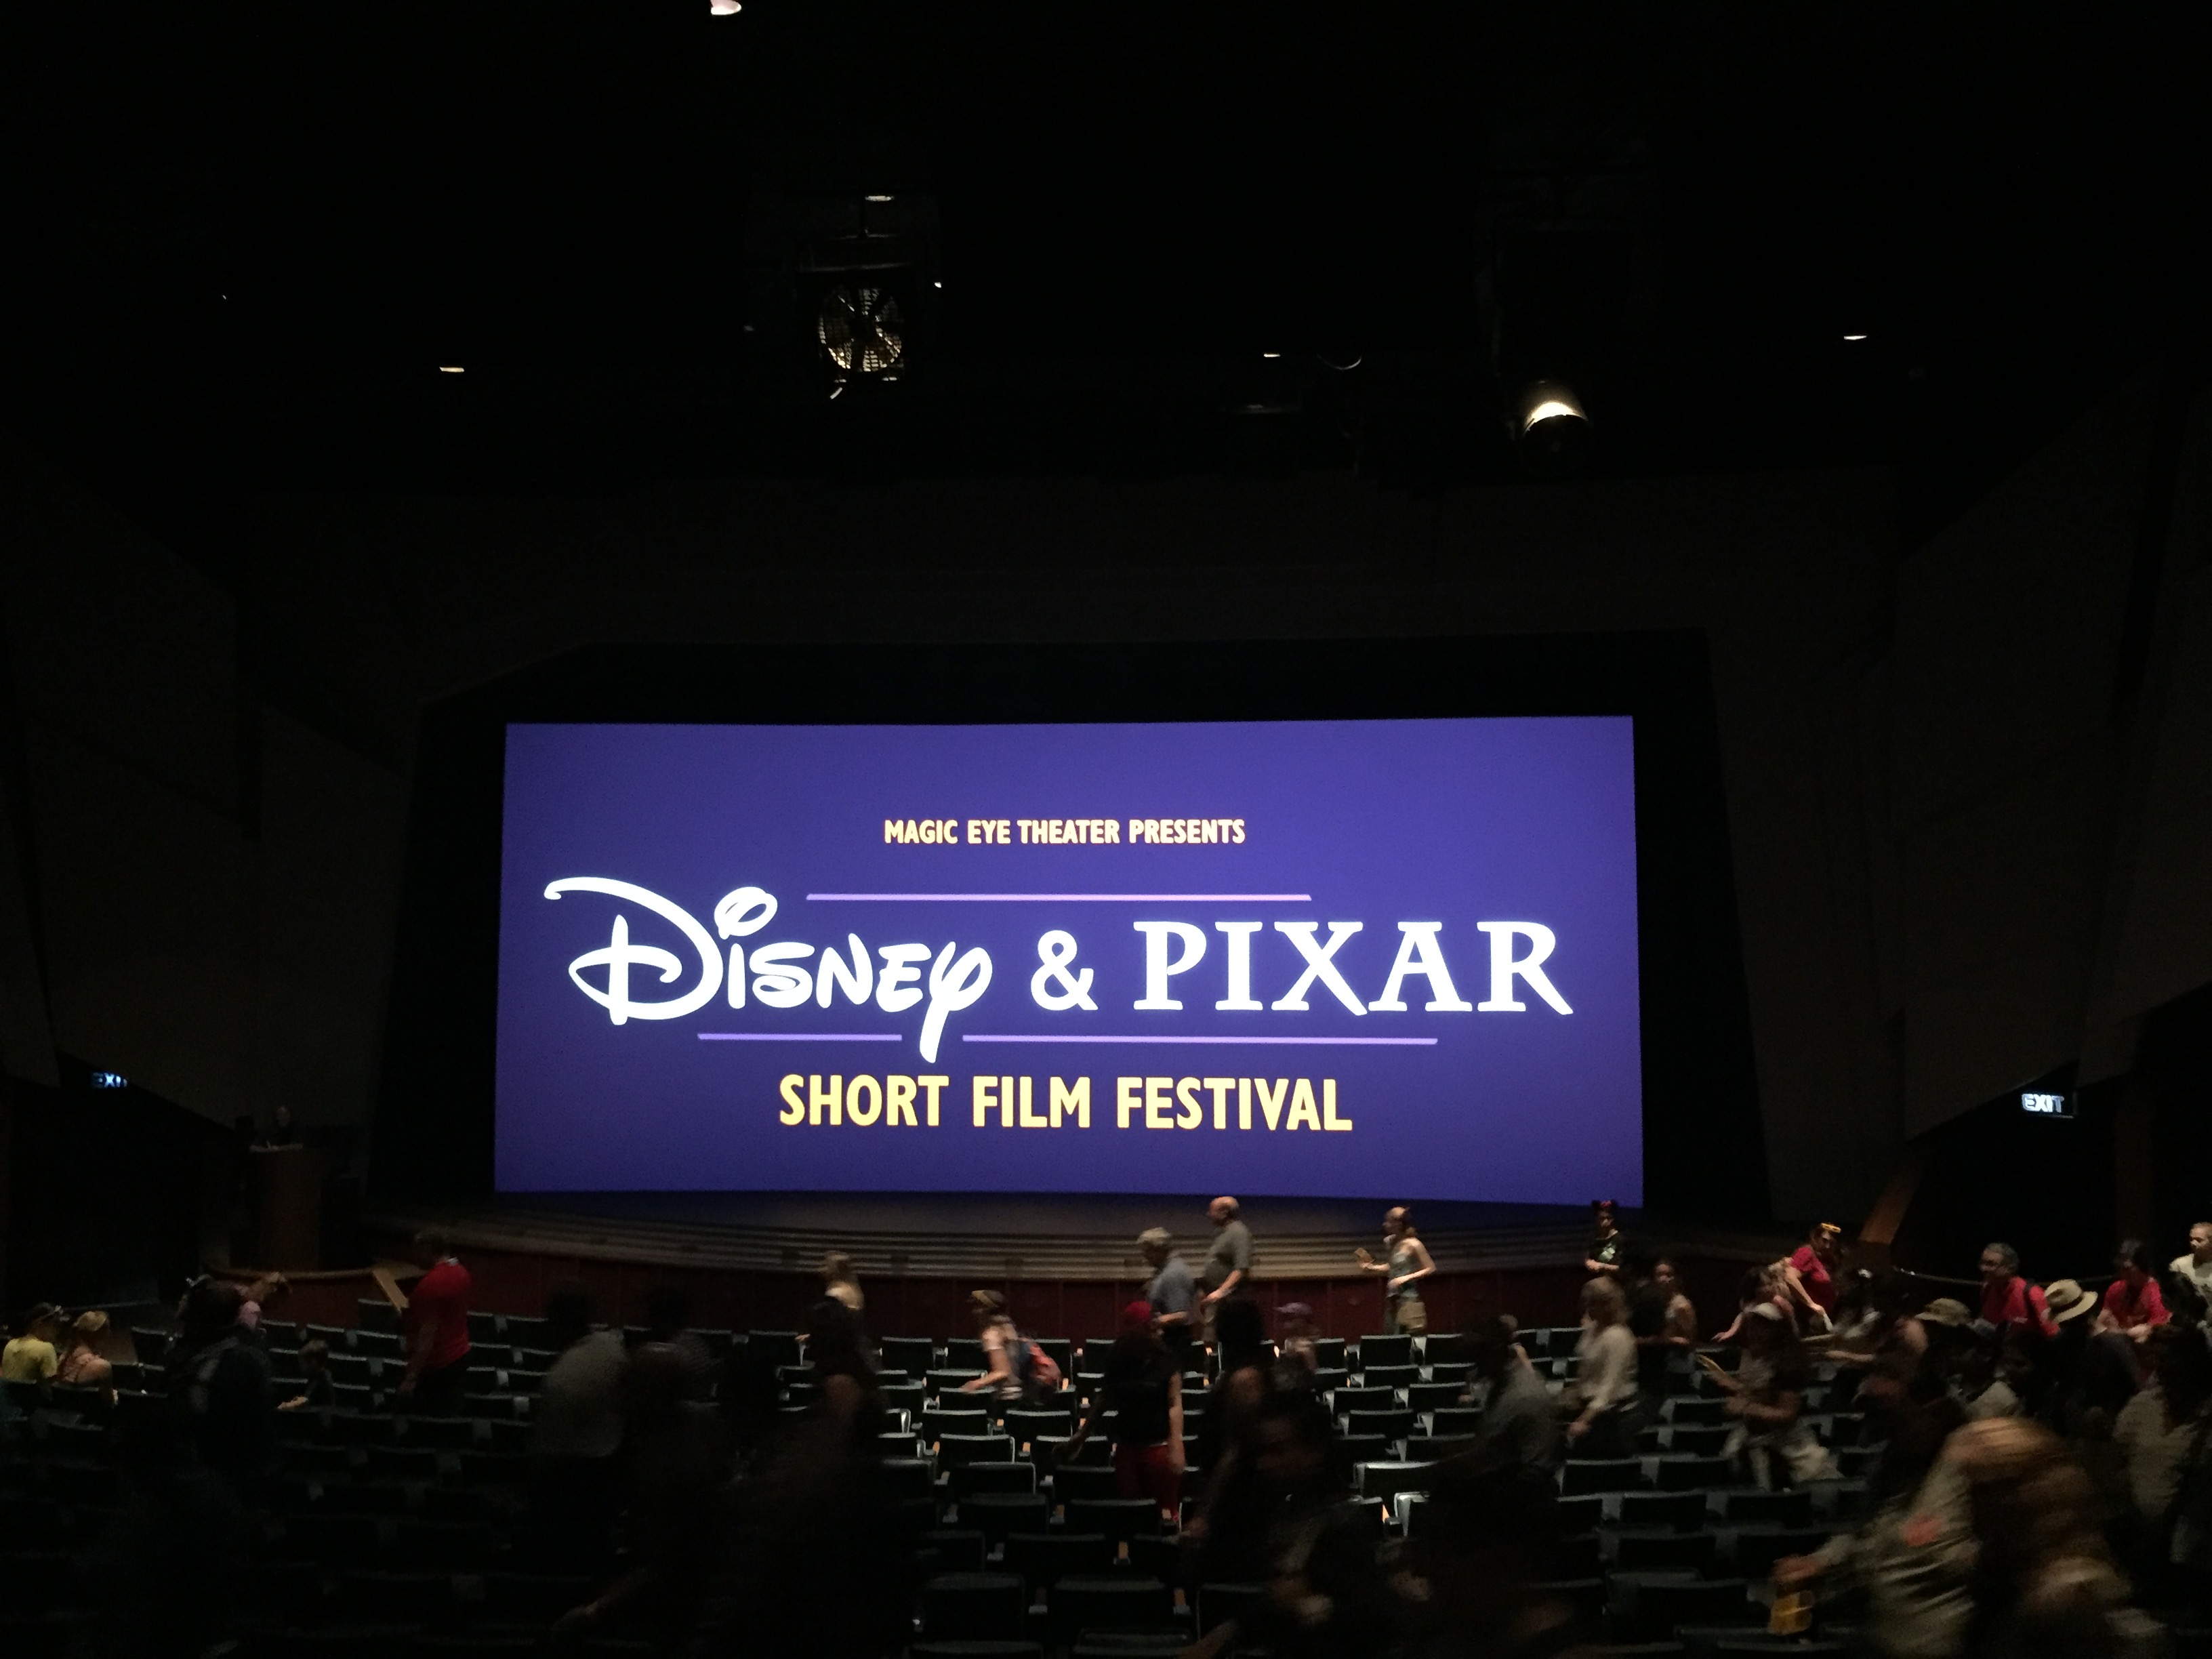 Disney & Pixar Short Film Festival Opens at Epcot